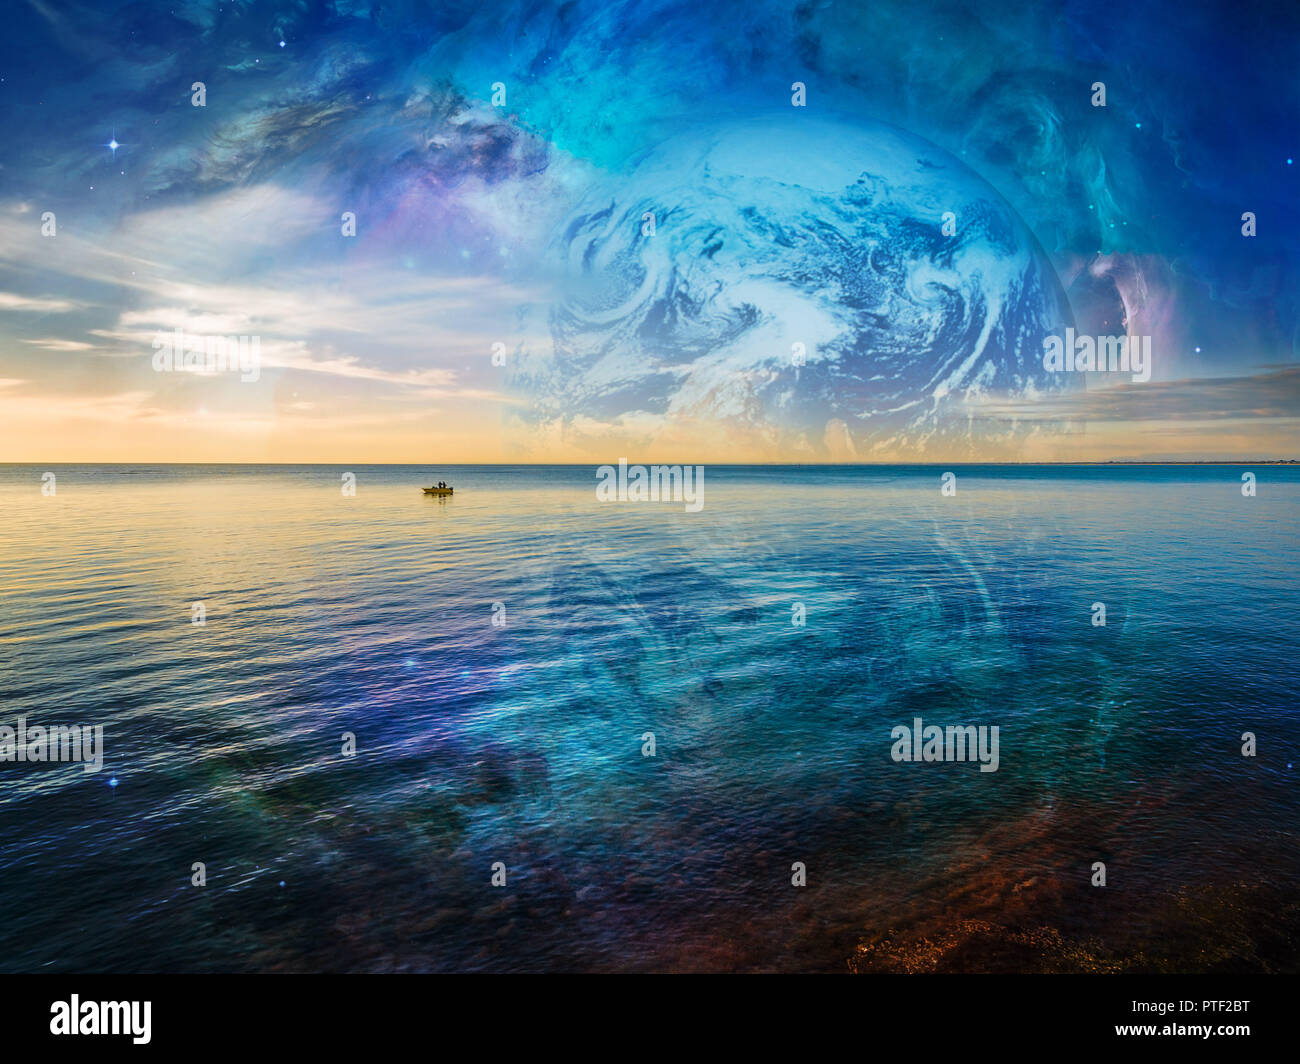 Imaginaire Paysage - lonely bateau de pêche flottant sur l'océan tranquille avec de l'eau planète et galaxie dans le ciel. Les éléments de cette image sont fournis par Banque D'Images